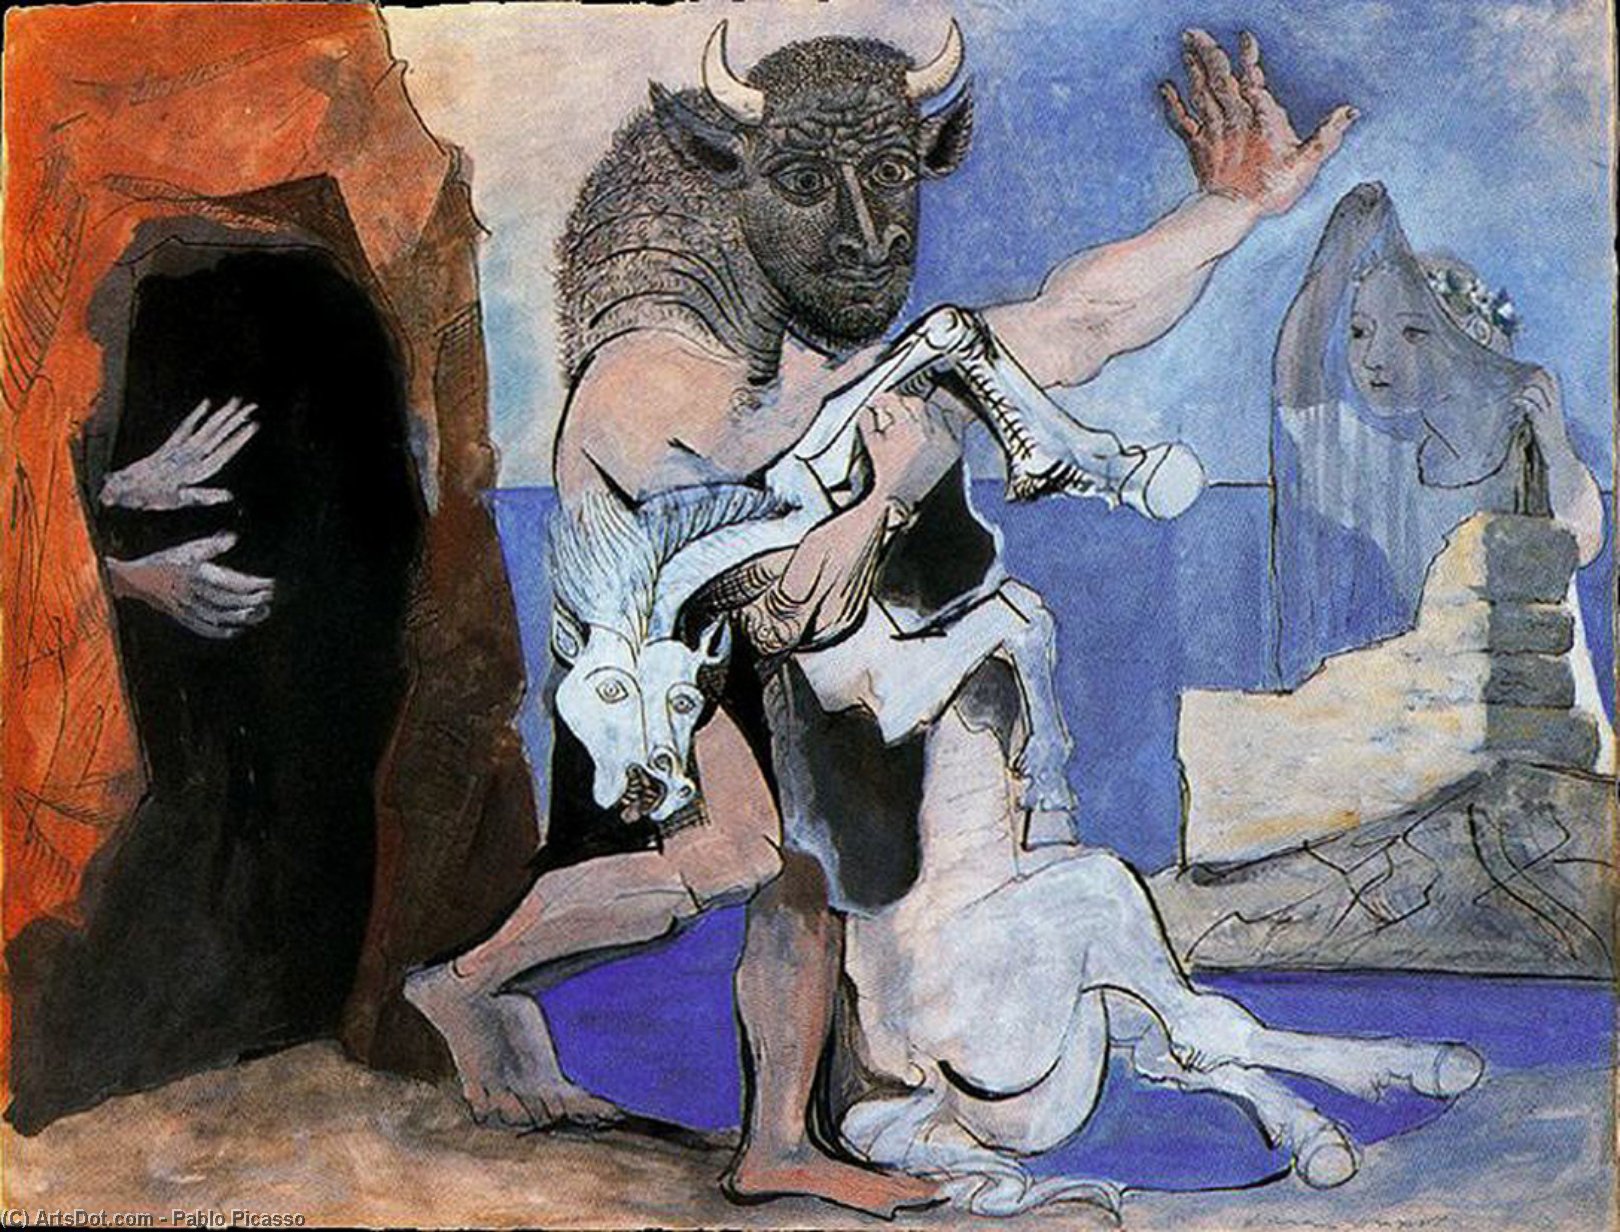 WikiOO.org - Encyclopedia of Fine Arts - Lukisan, Artwork Pablo Picasso - Minotauro y yegua muerta delante de una gruta y niña con velo